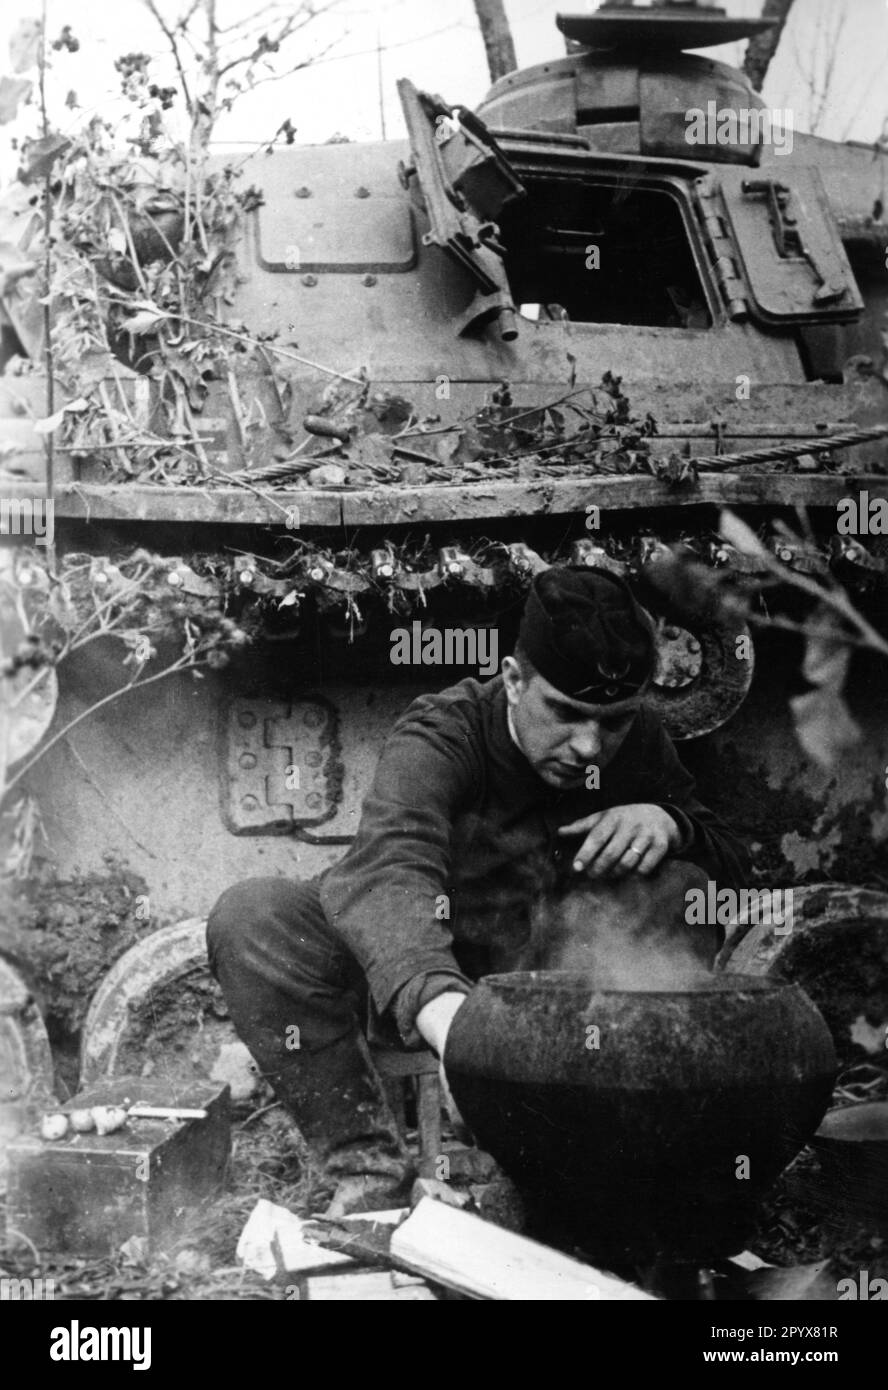 Équipage de réservoir d'un Panzer III manger au sud-est de Rzhev. Photo Ulrich [traduction automatique] Banque D'Images